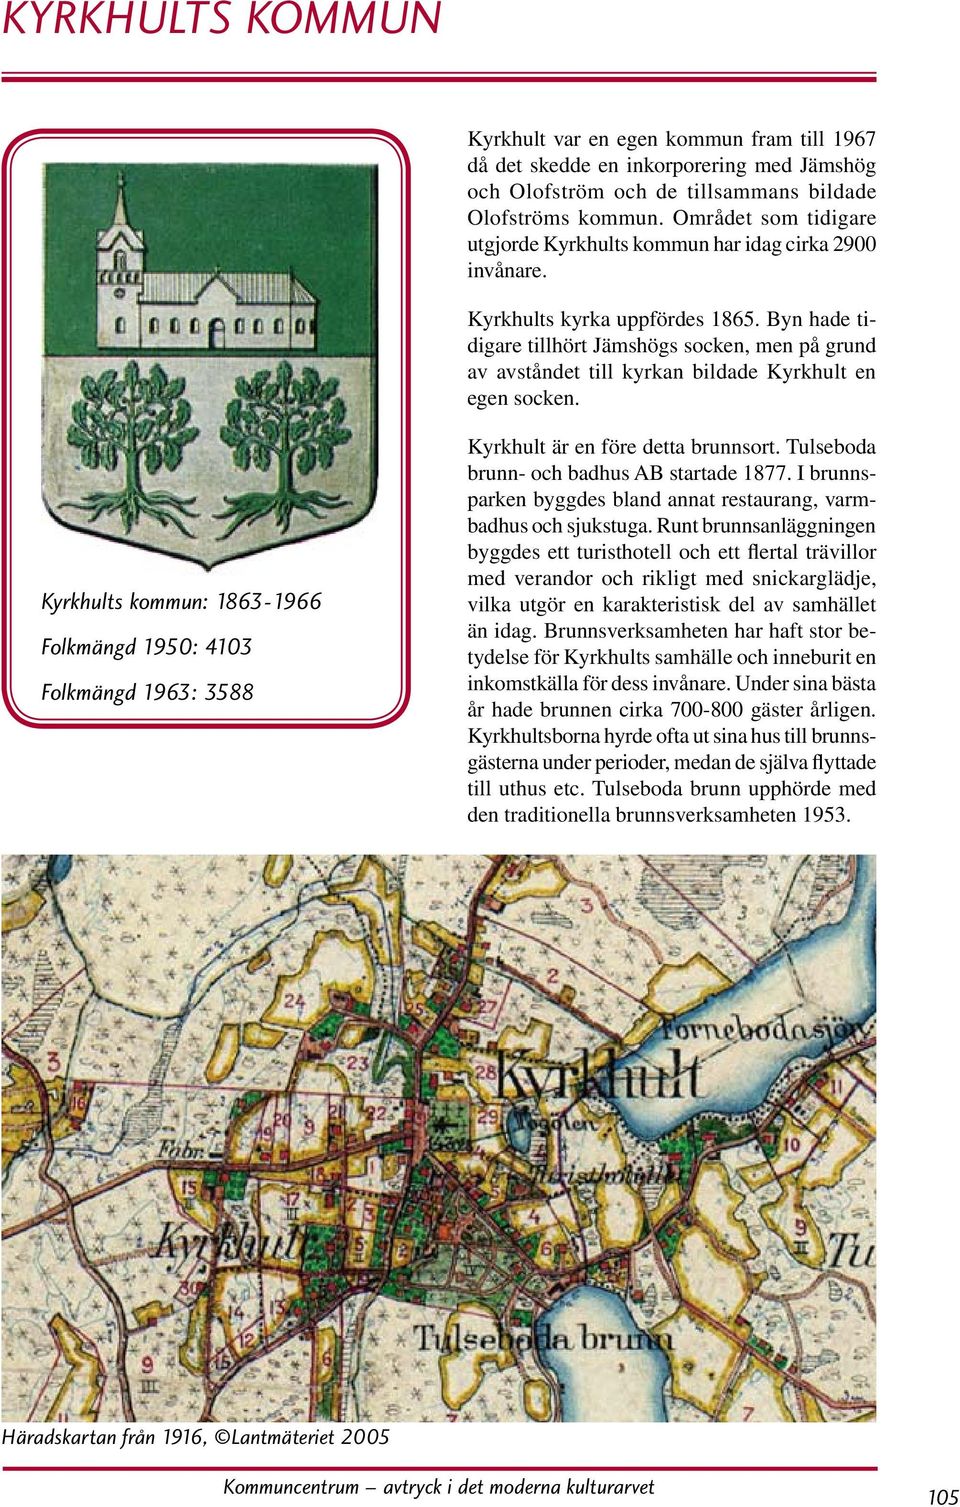 Byn hade tidigare tillhört Jämshögs socken, men på grund av avståndet till kyrkan bildade Kyrkhult en egen socken.